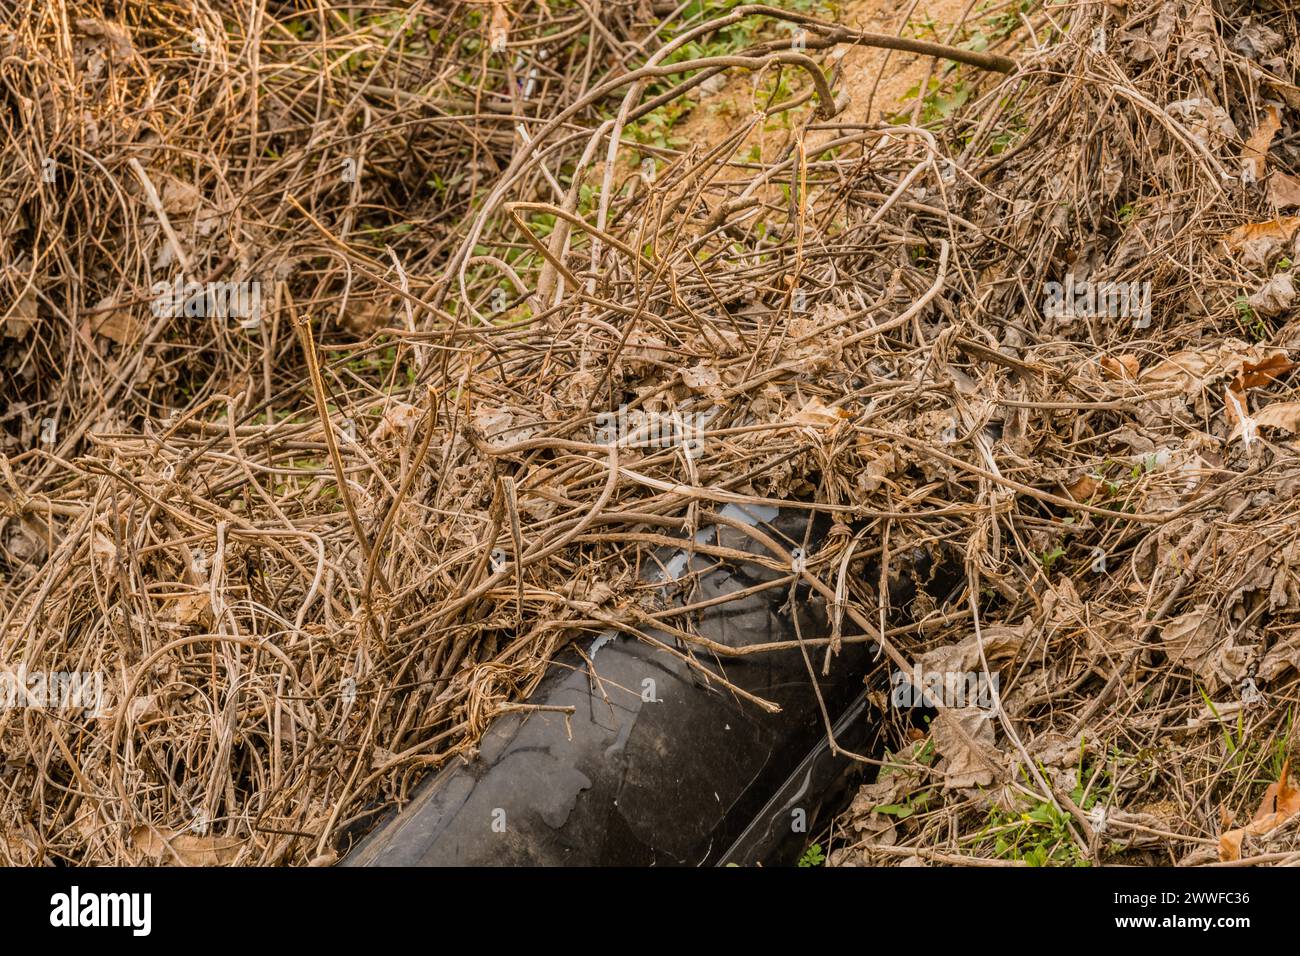 Uno pneumatico usurato e abbandonato mezzo sepolto in un ambiente erboso, in Corea del Sud Foto Stock